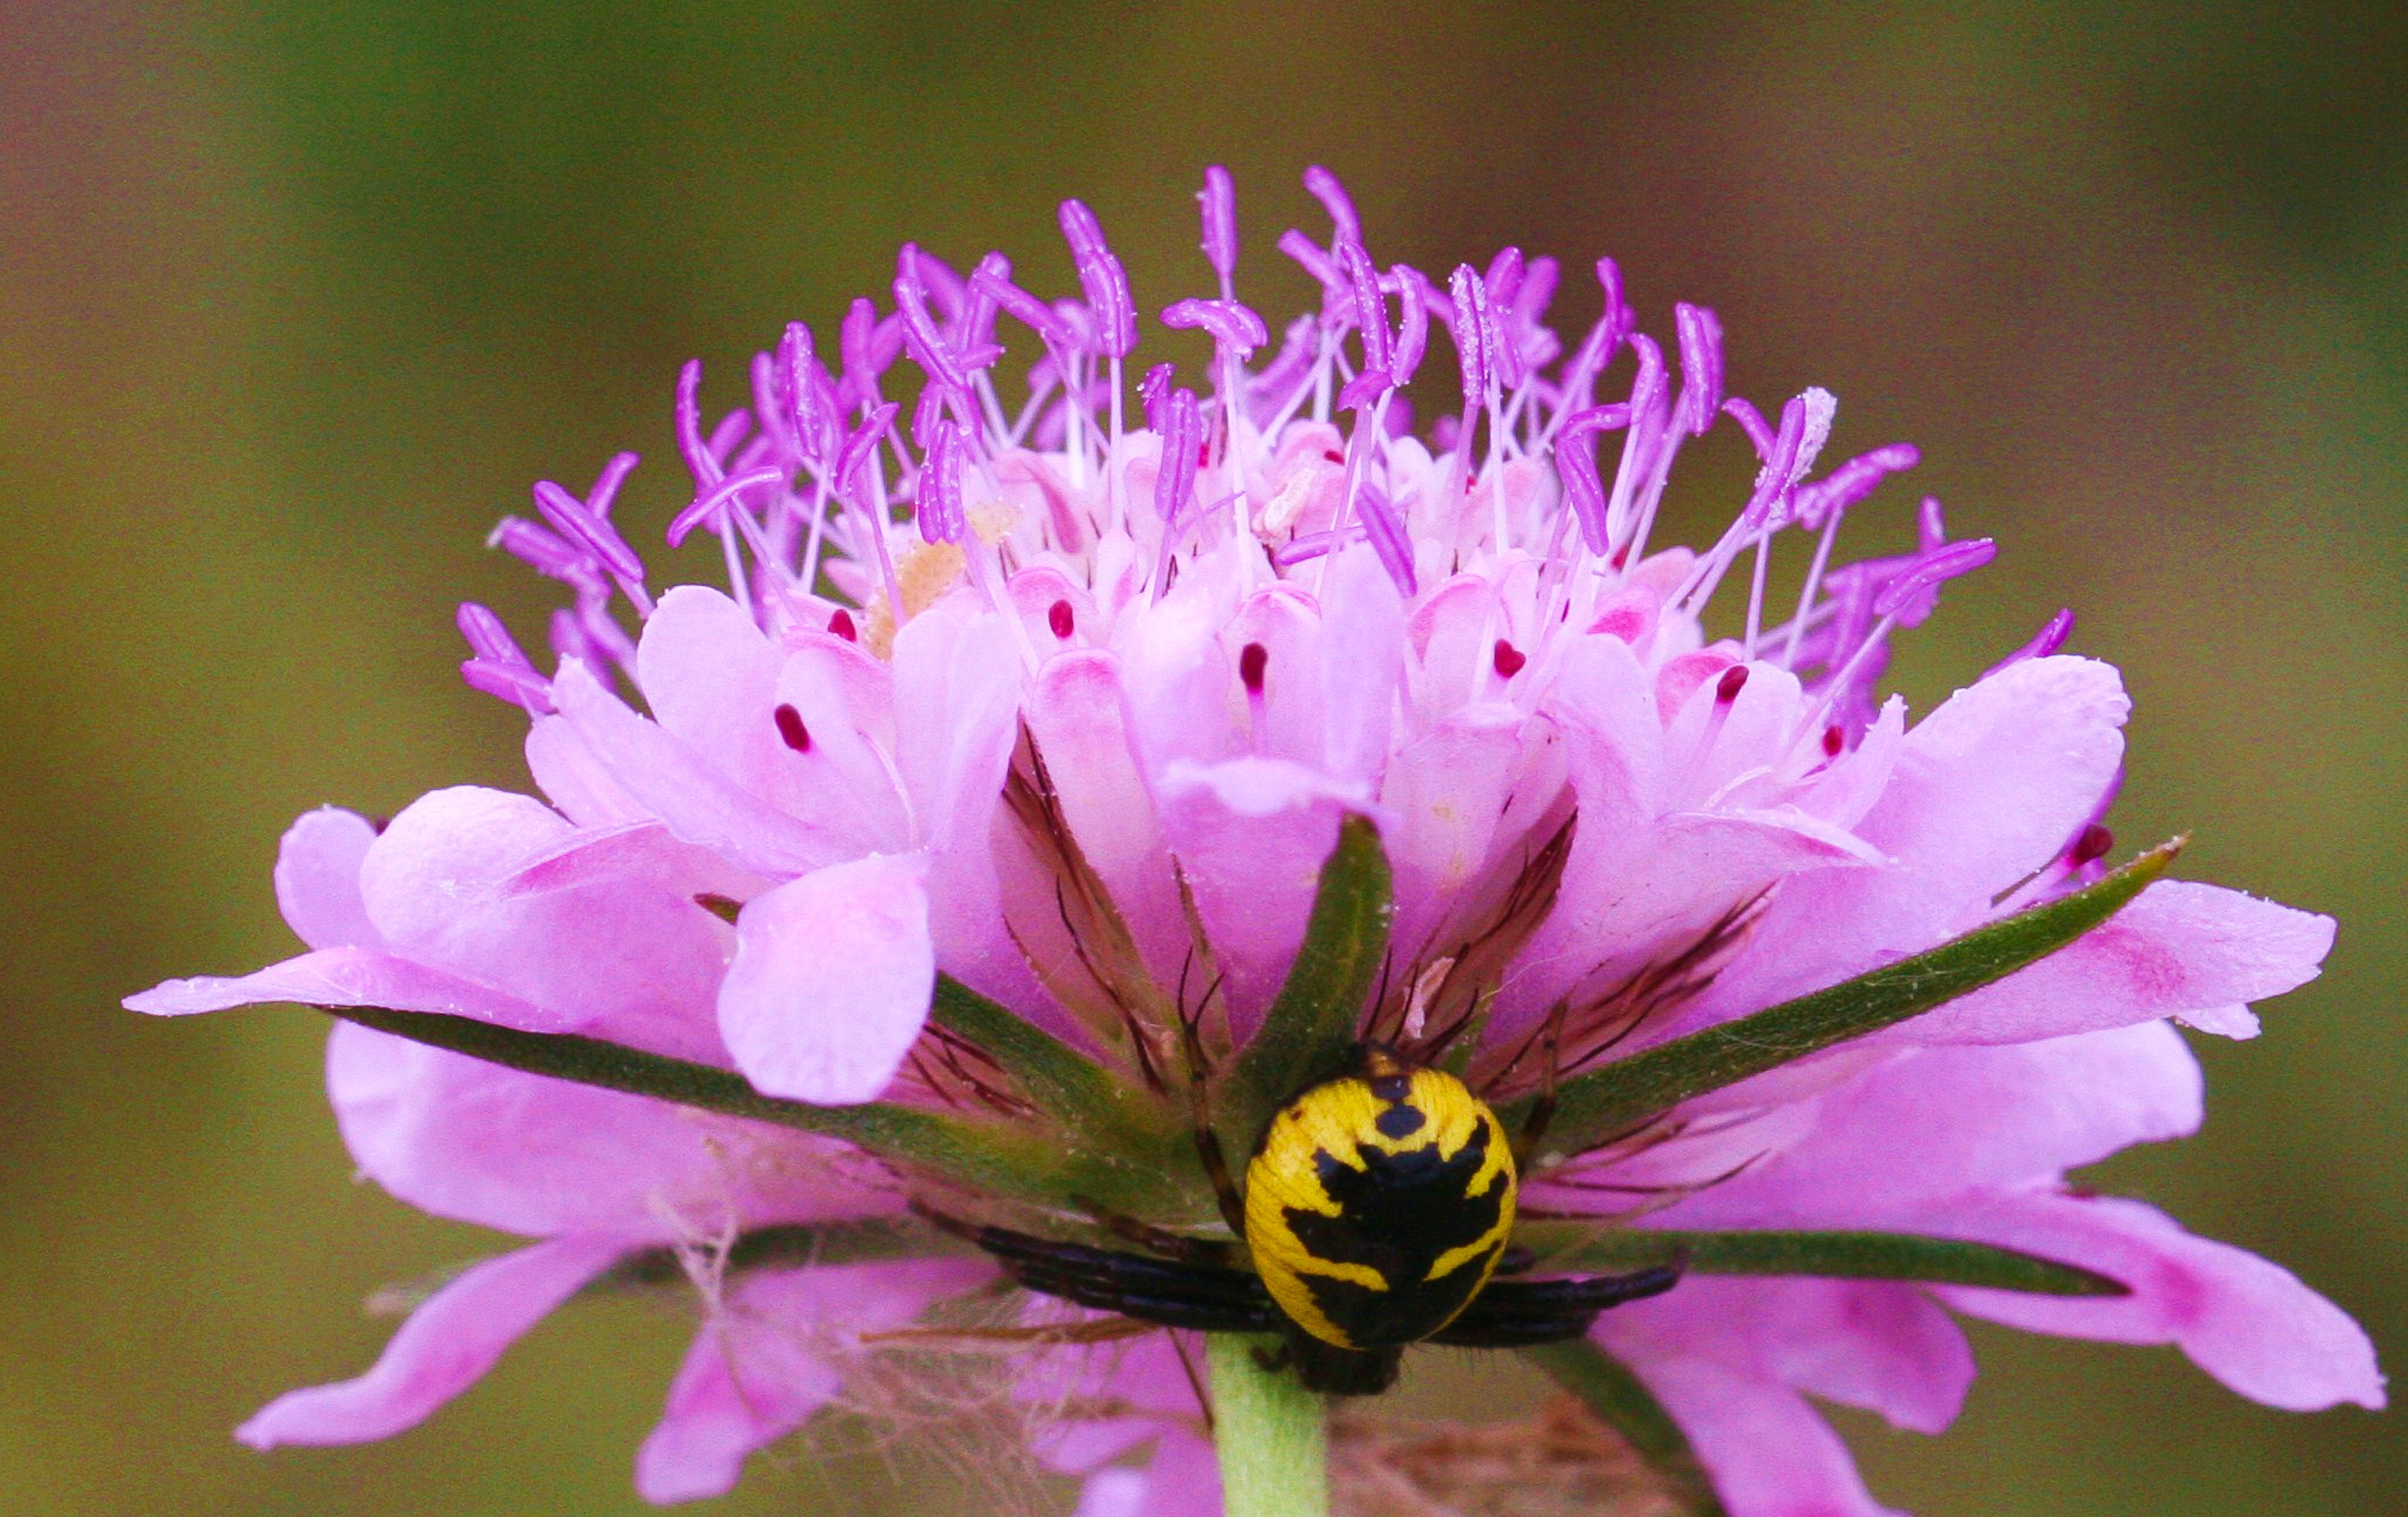 banded argiope spider on pink petaled flower